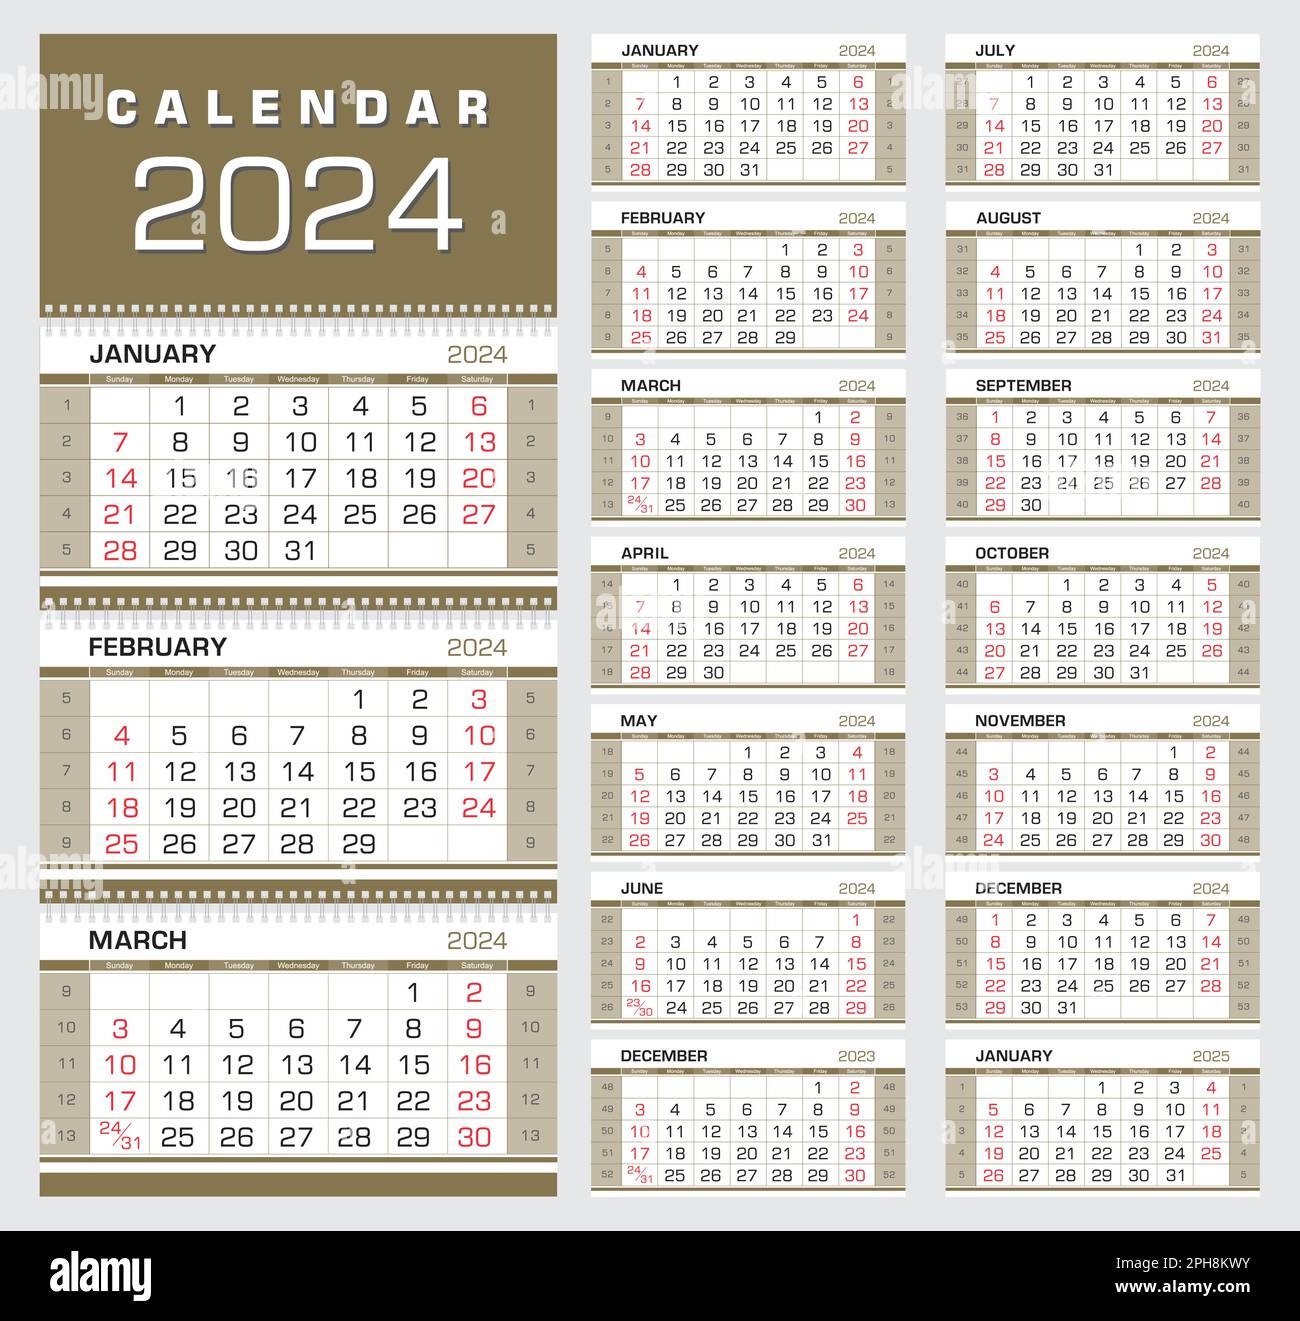 Calendario 2024. Calendario trimestral de pared con números de semana